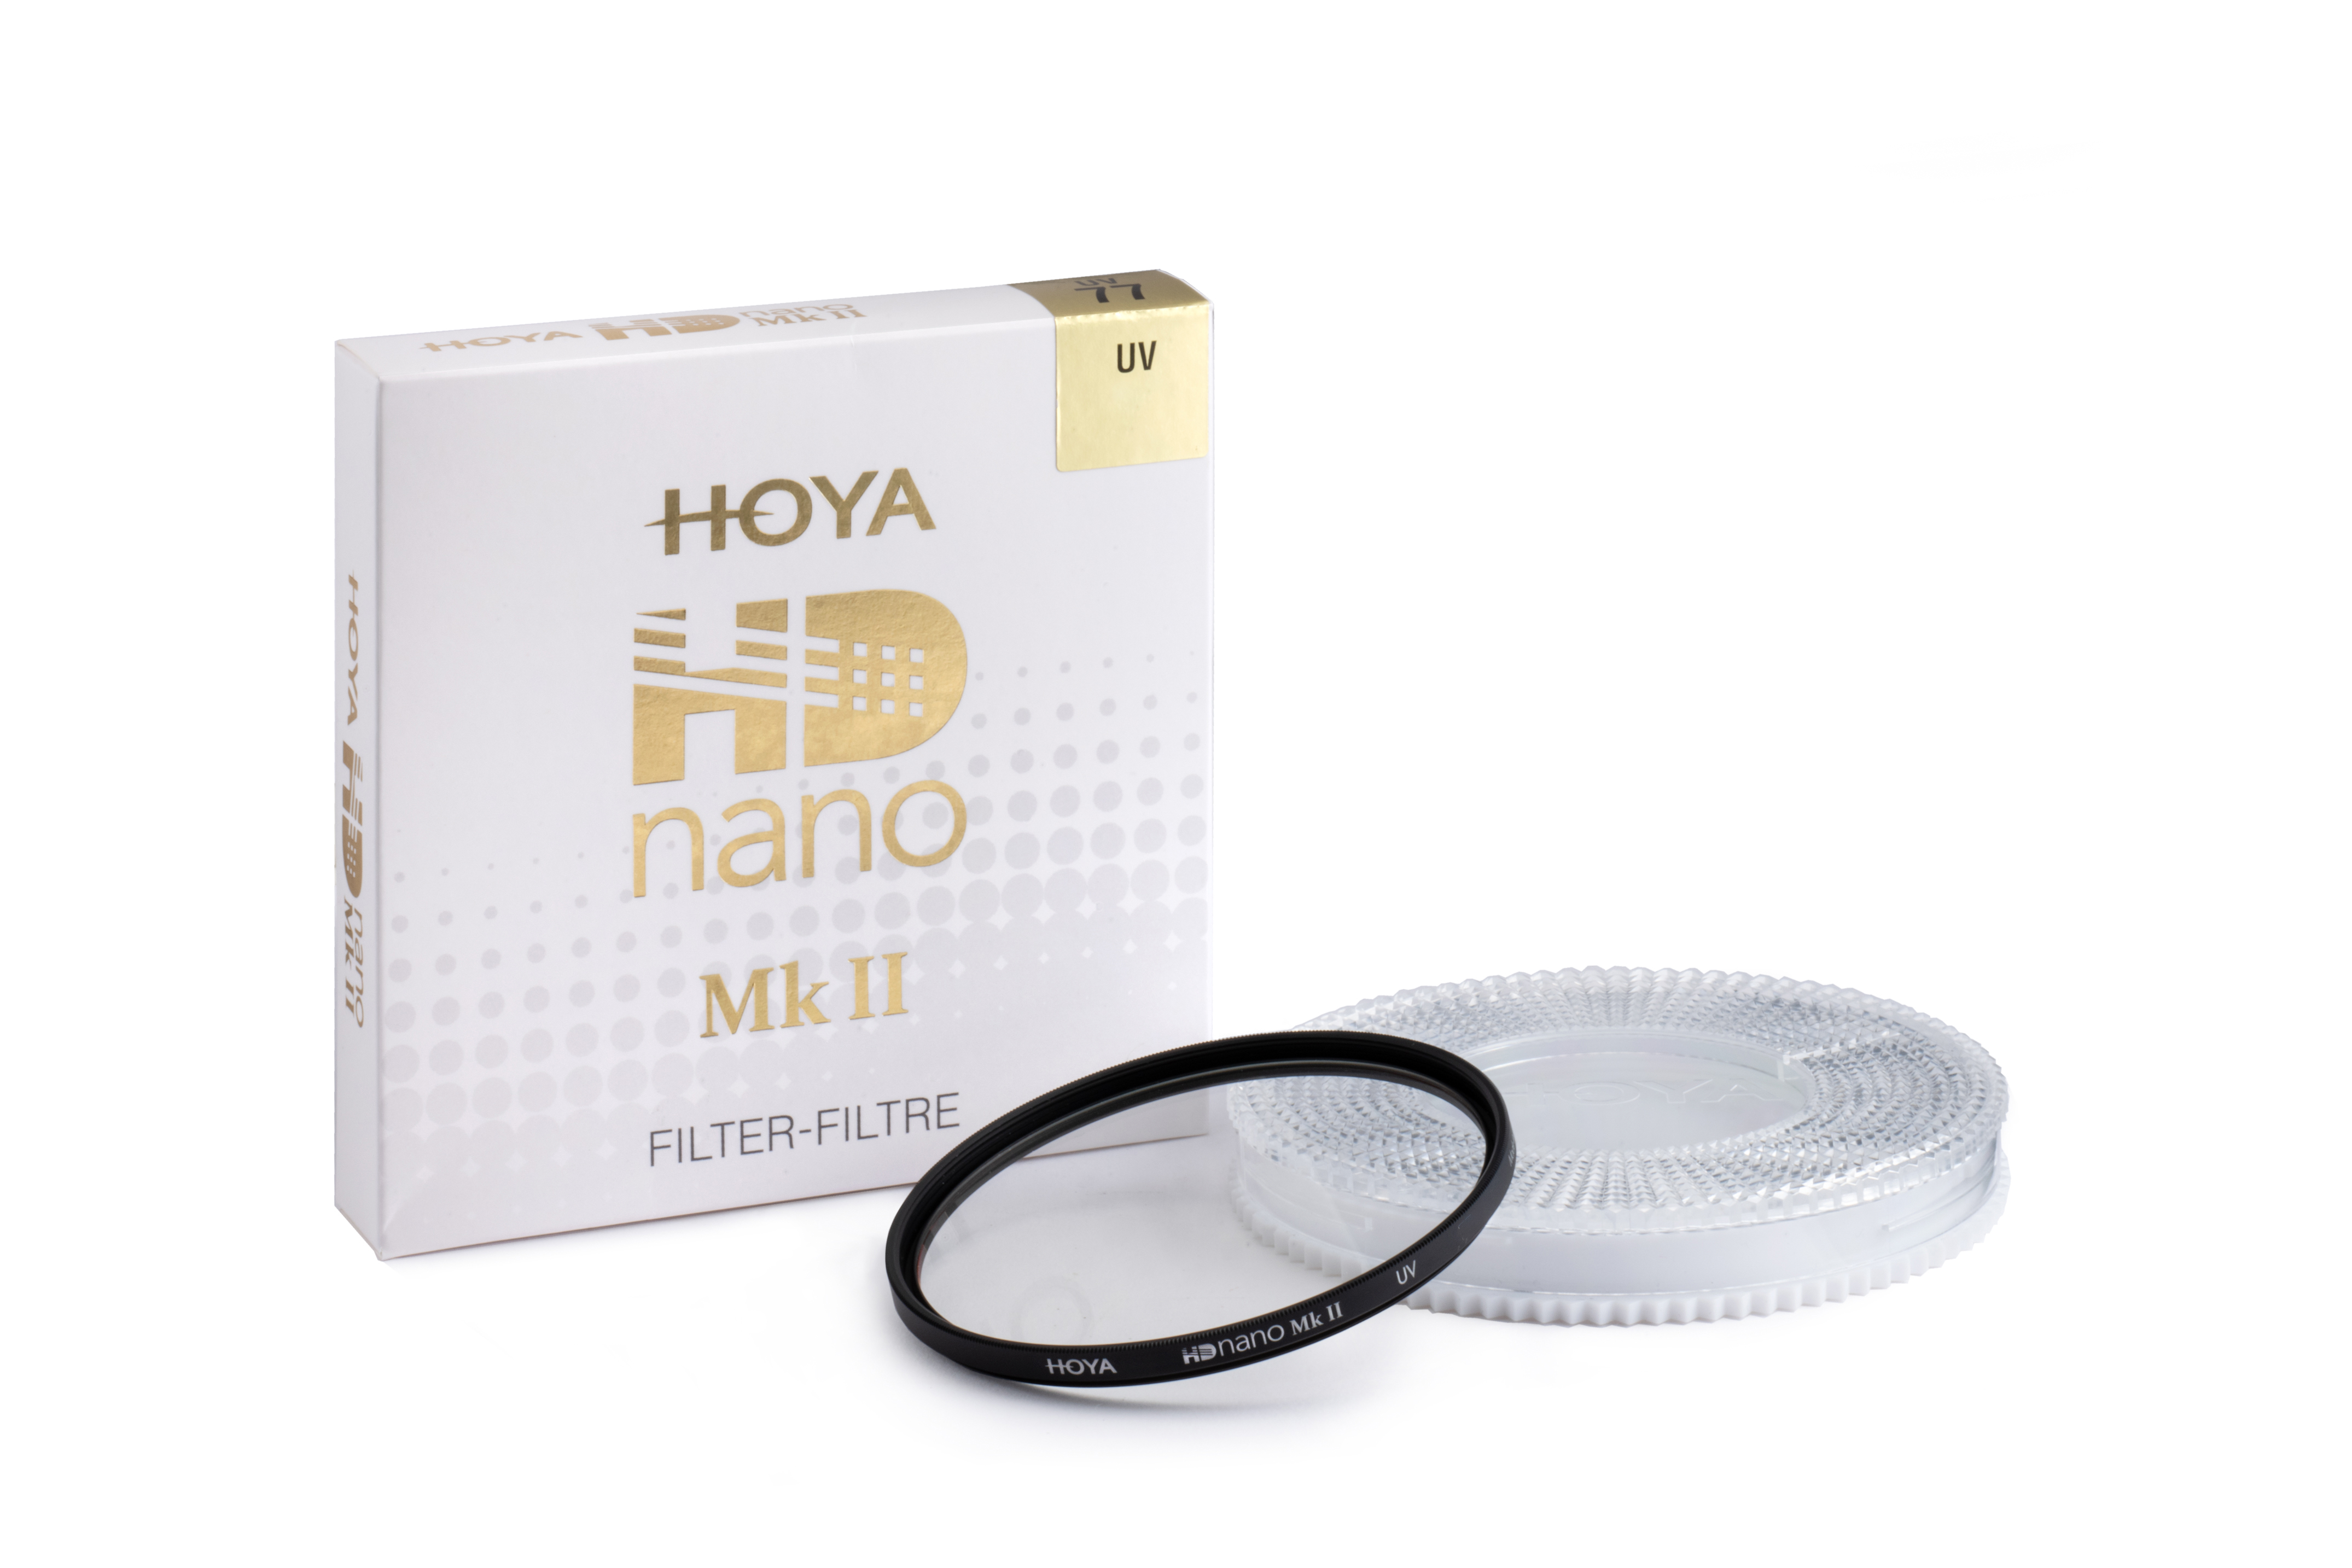 Hoya HD nano Mk II UV